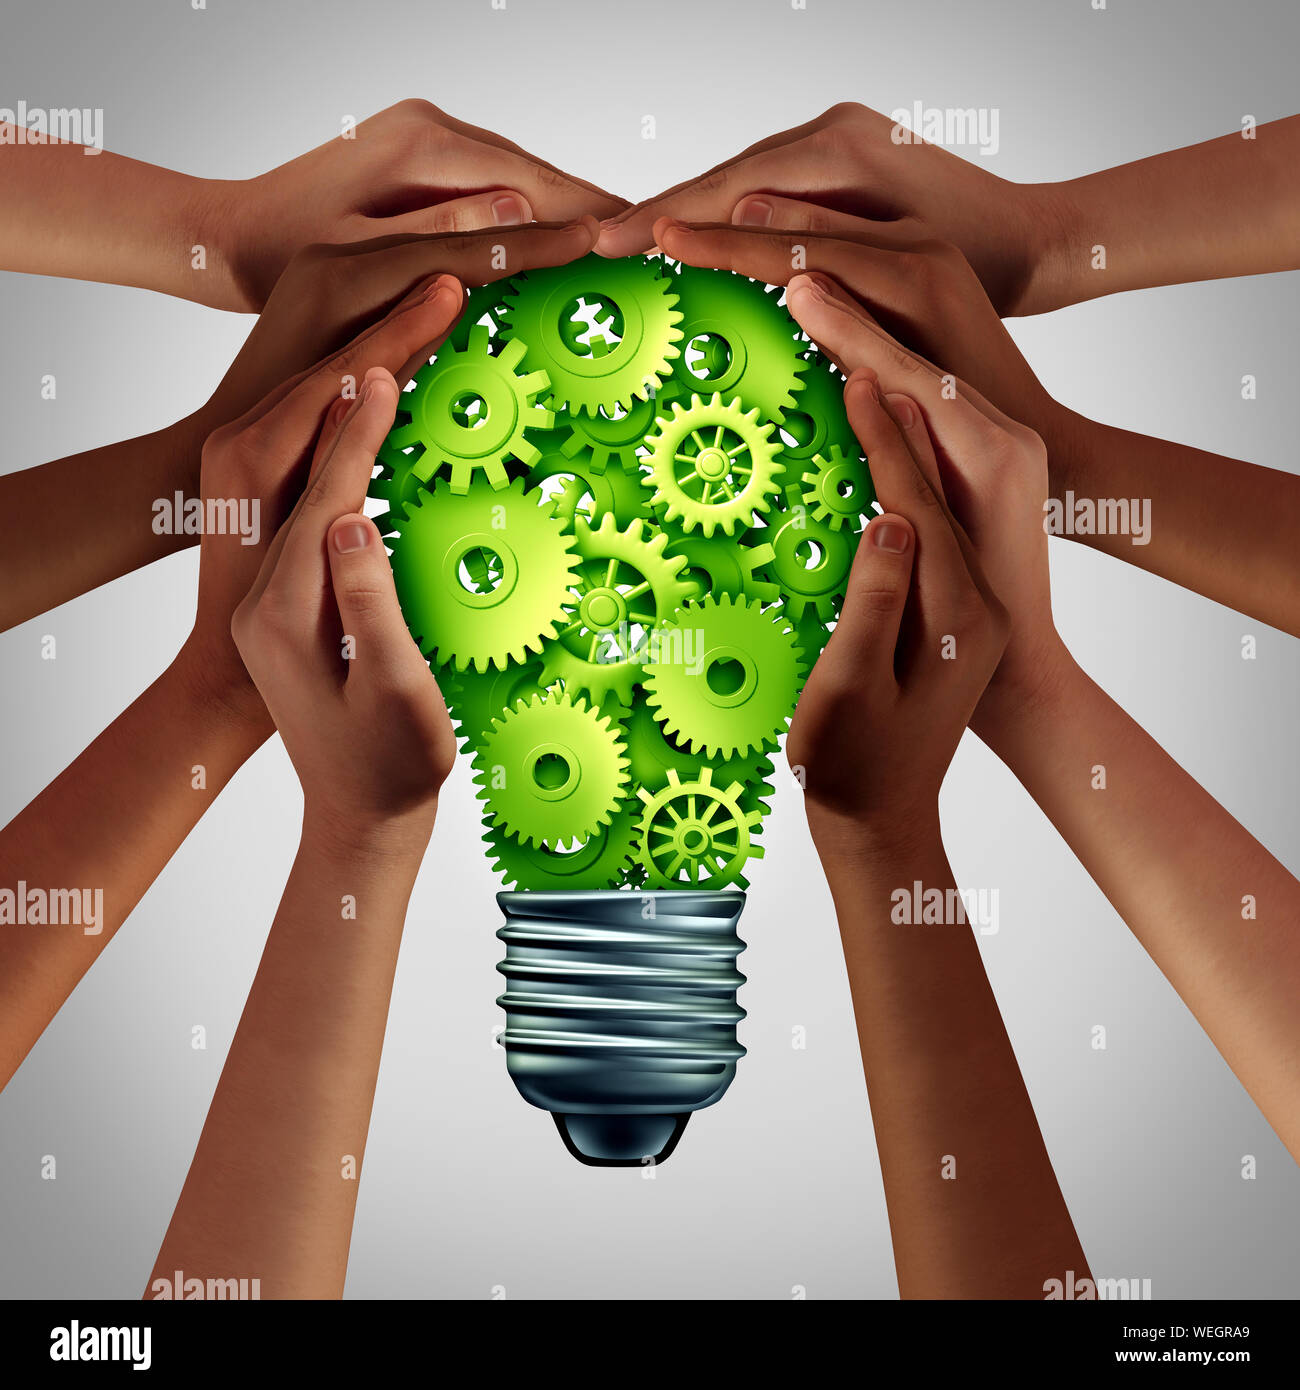 Elektrische Leistung Konzept und Energieeffizienz Idee als eine grüne Lösung mit vielfältigen Hände halten eine Glühbirne für alternativen Kraftstoff. Stockfoto